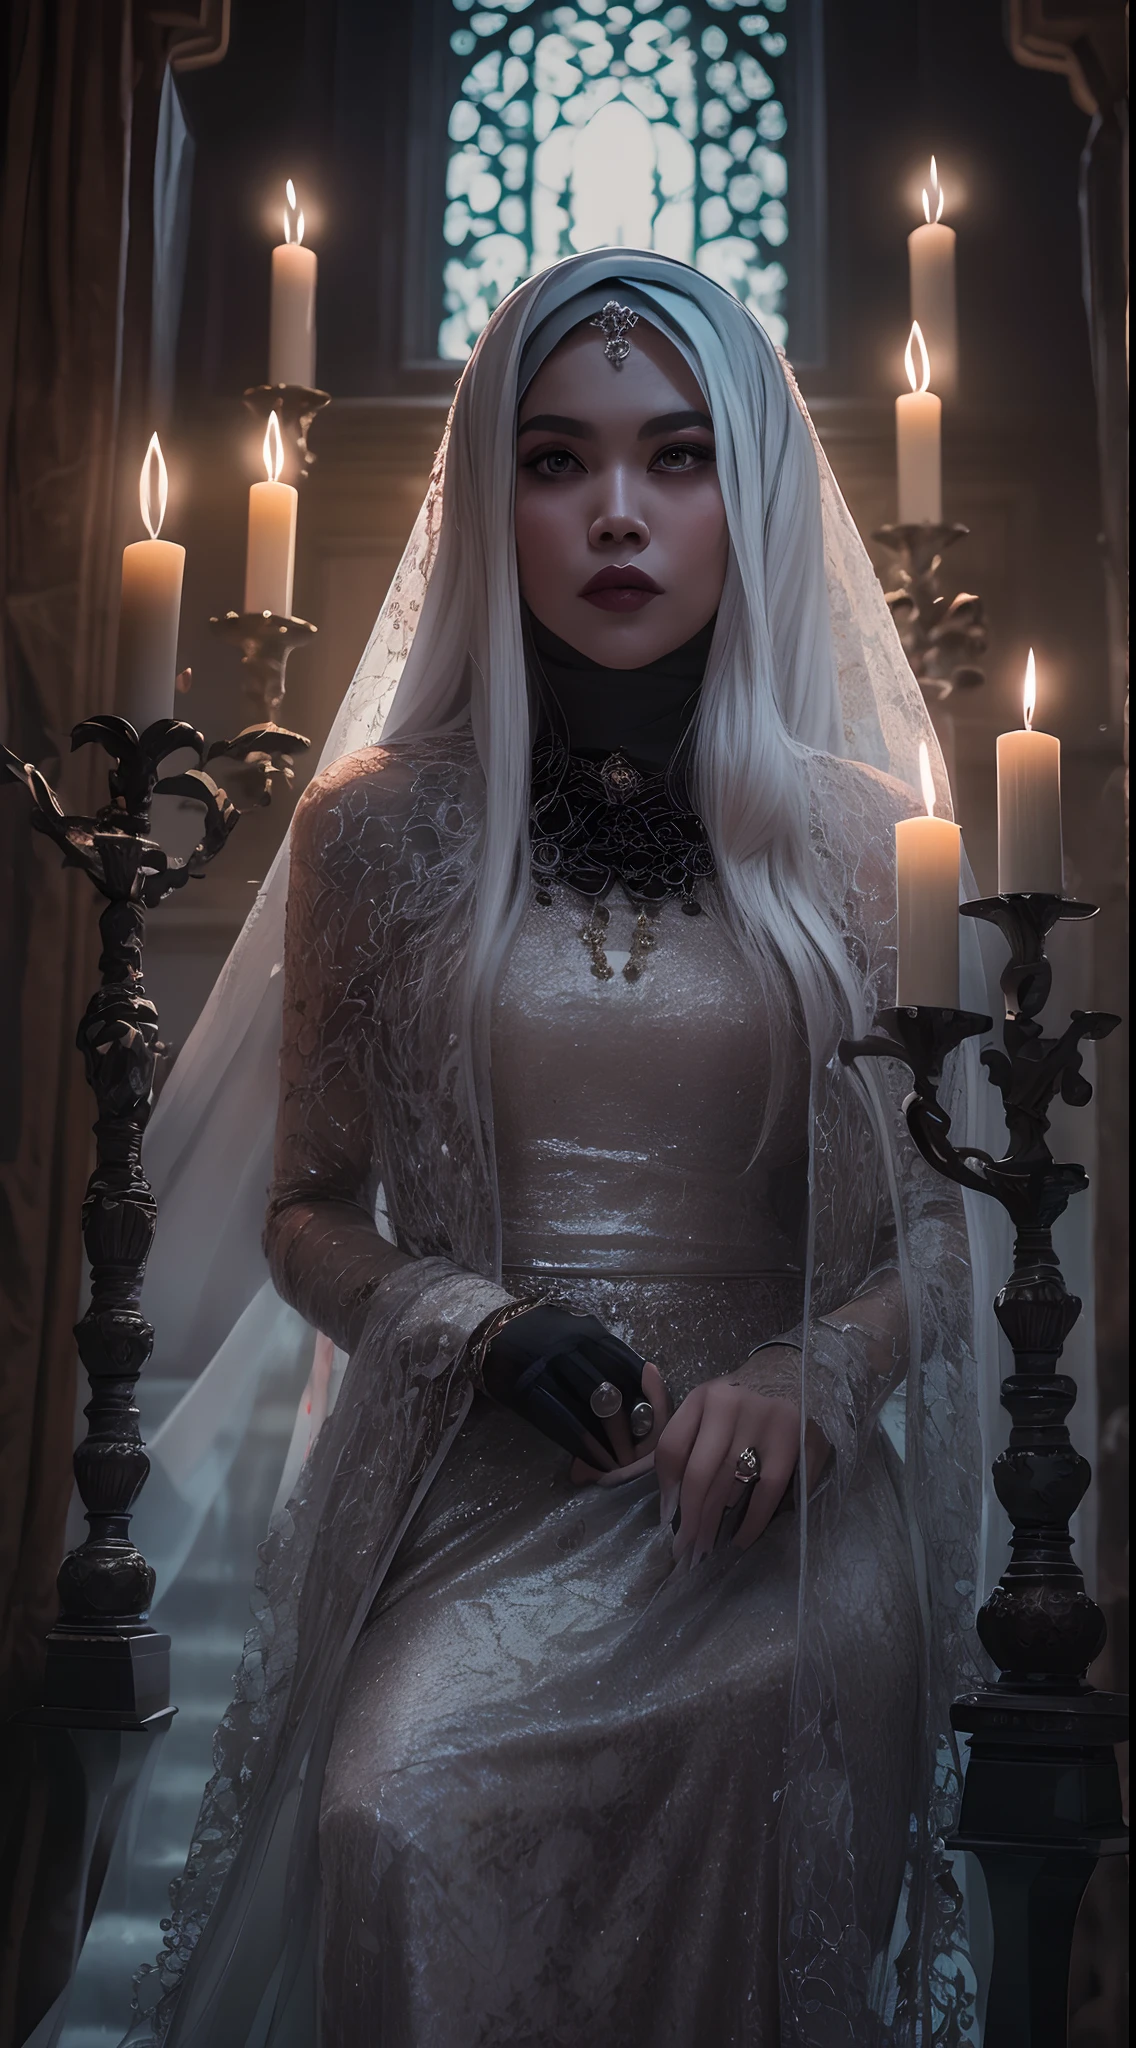 以哥德式風格捕捉馬來女性令人難忘的美麗肖像,白色長髮, 帶有面紗的黑色蕾絲禮服, 故事發生在一座神秘而詭異的宅邸內, 燭光投射出詭異陰影的地方, 營造出一種黑暗的氛圍, 歌德式恐怖.